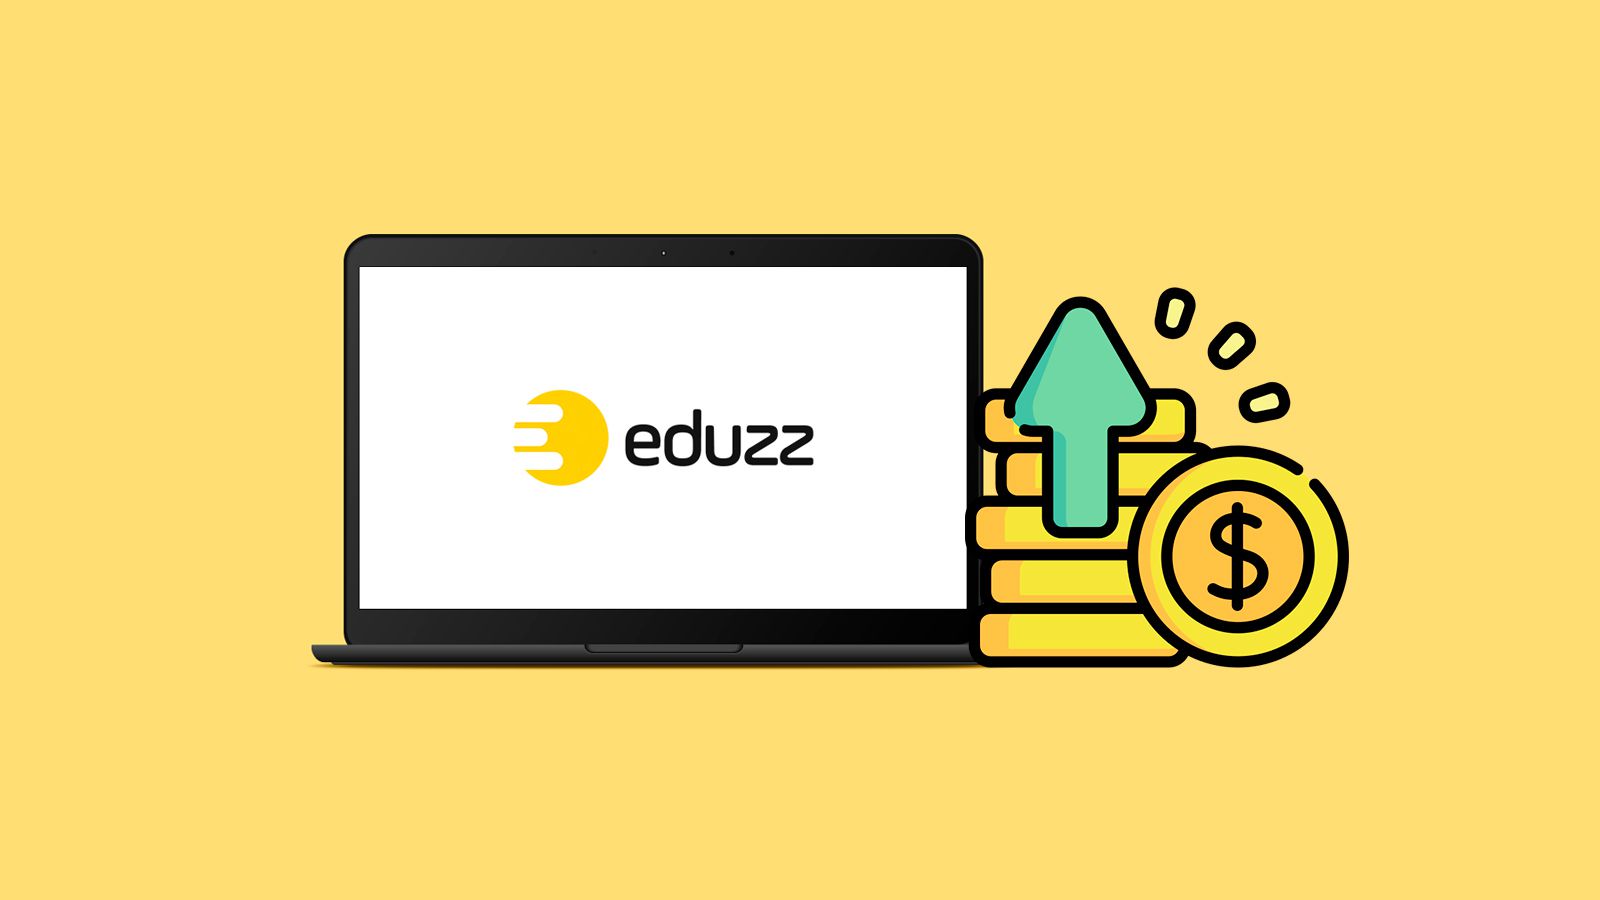 Explore o potencial da Eduzz com nosso guia: cadastro, estratégias de venda e dicas para sucesso no marketing digital. Transforme ambições em realidade.